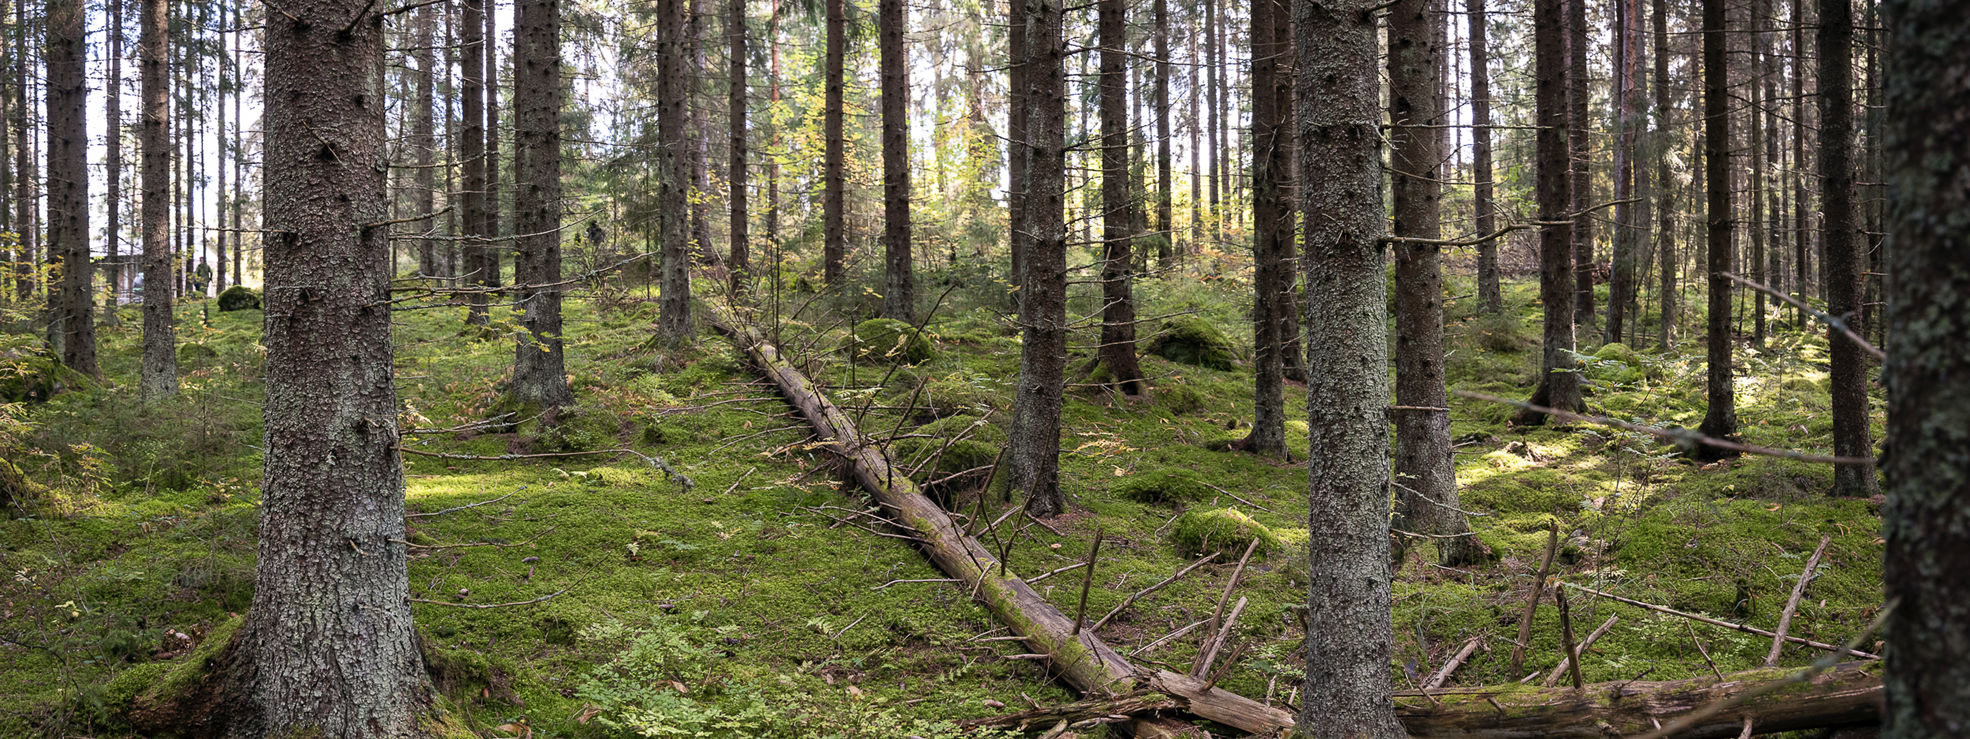 Uudistavan metsätalouden periaatteet tähtäävät luonnon tilan vahvistamiseen